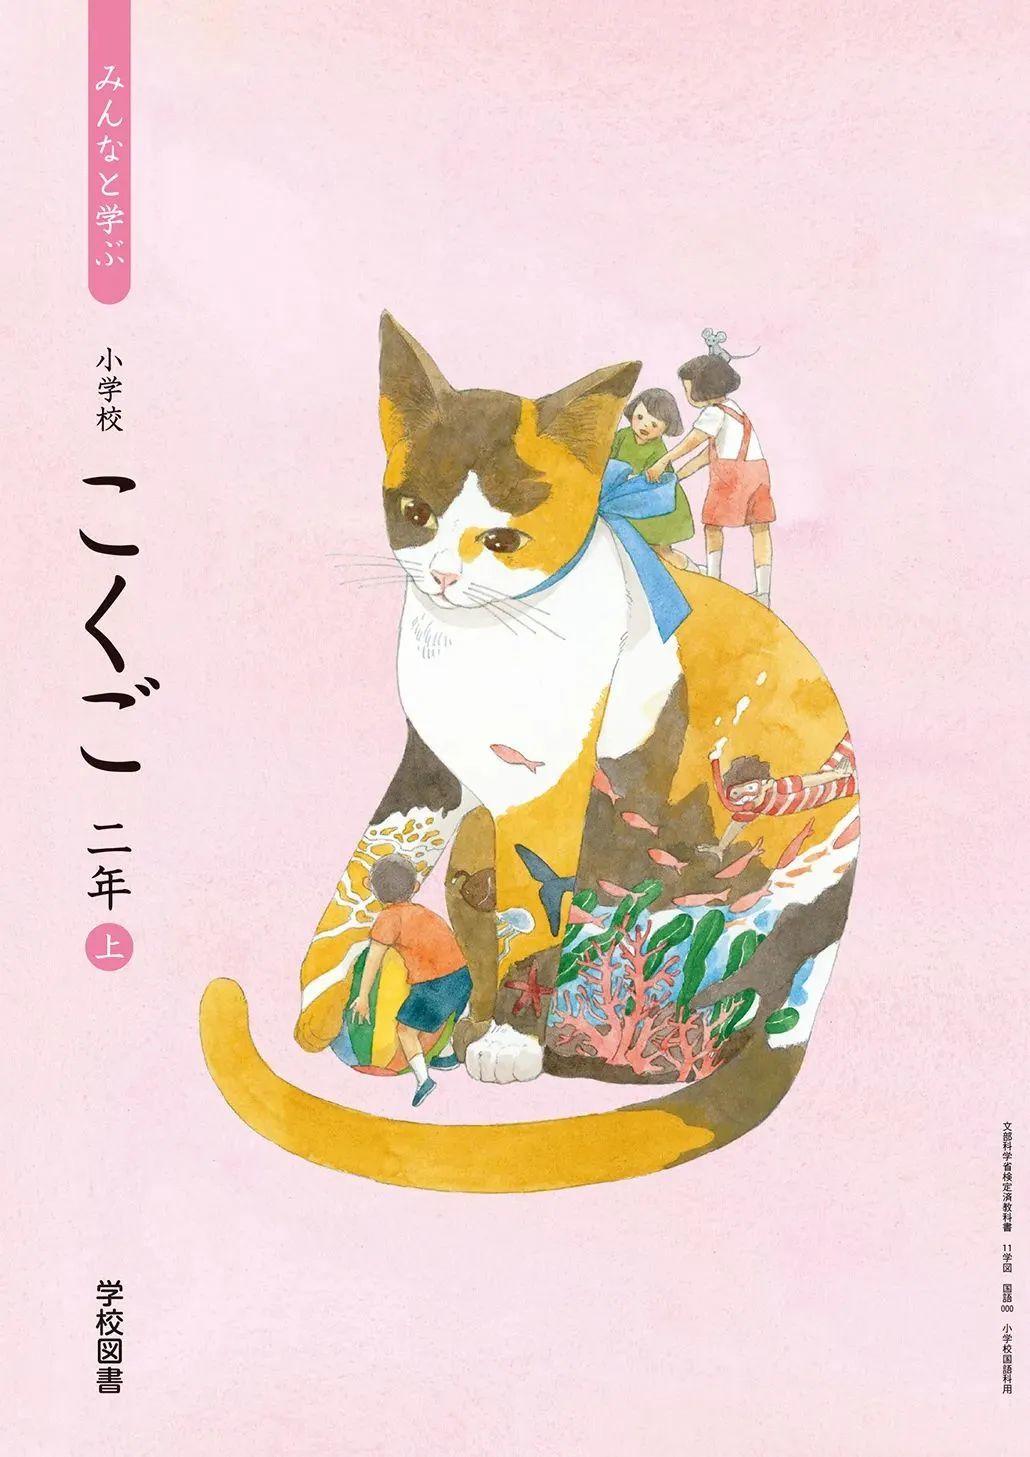 日本中小学生教科书封面设计,太美了吧! 第8张